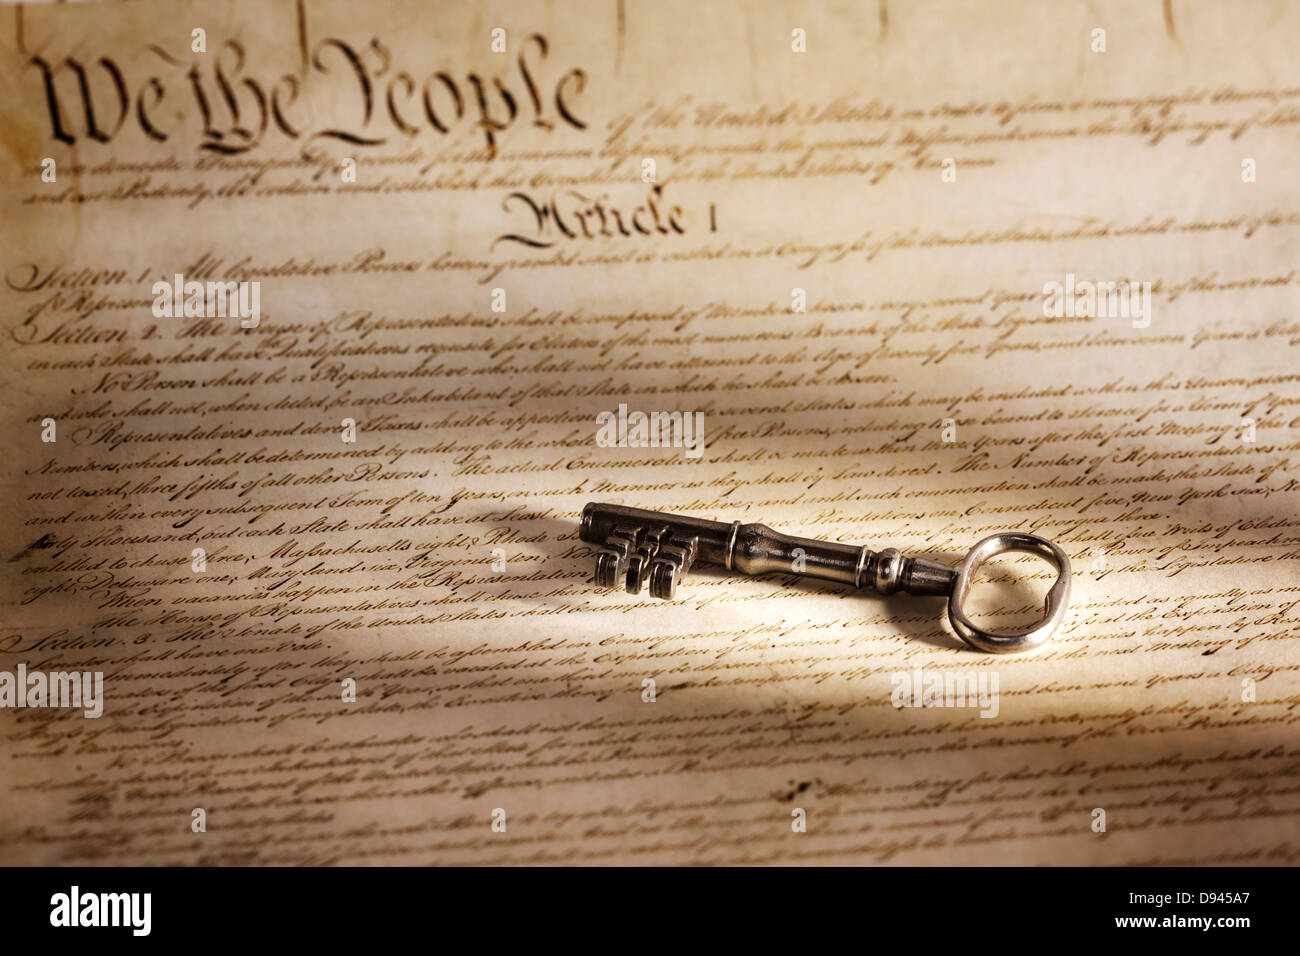 Taste, um die amerikanische Verfassung - eine große Taste auf eine Kopie der amerikanischen Verfassung. Stockfoto